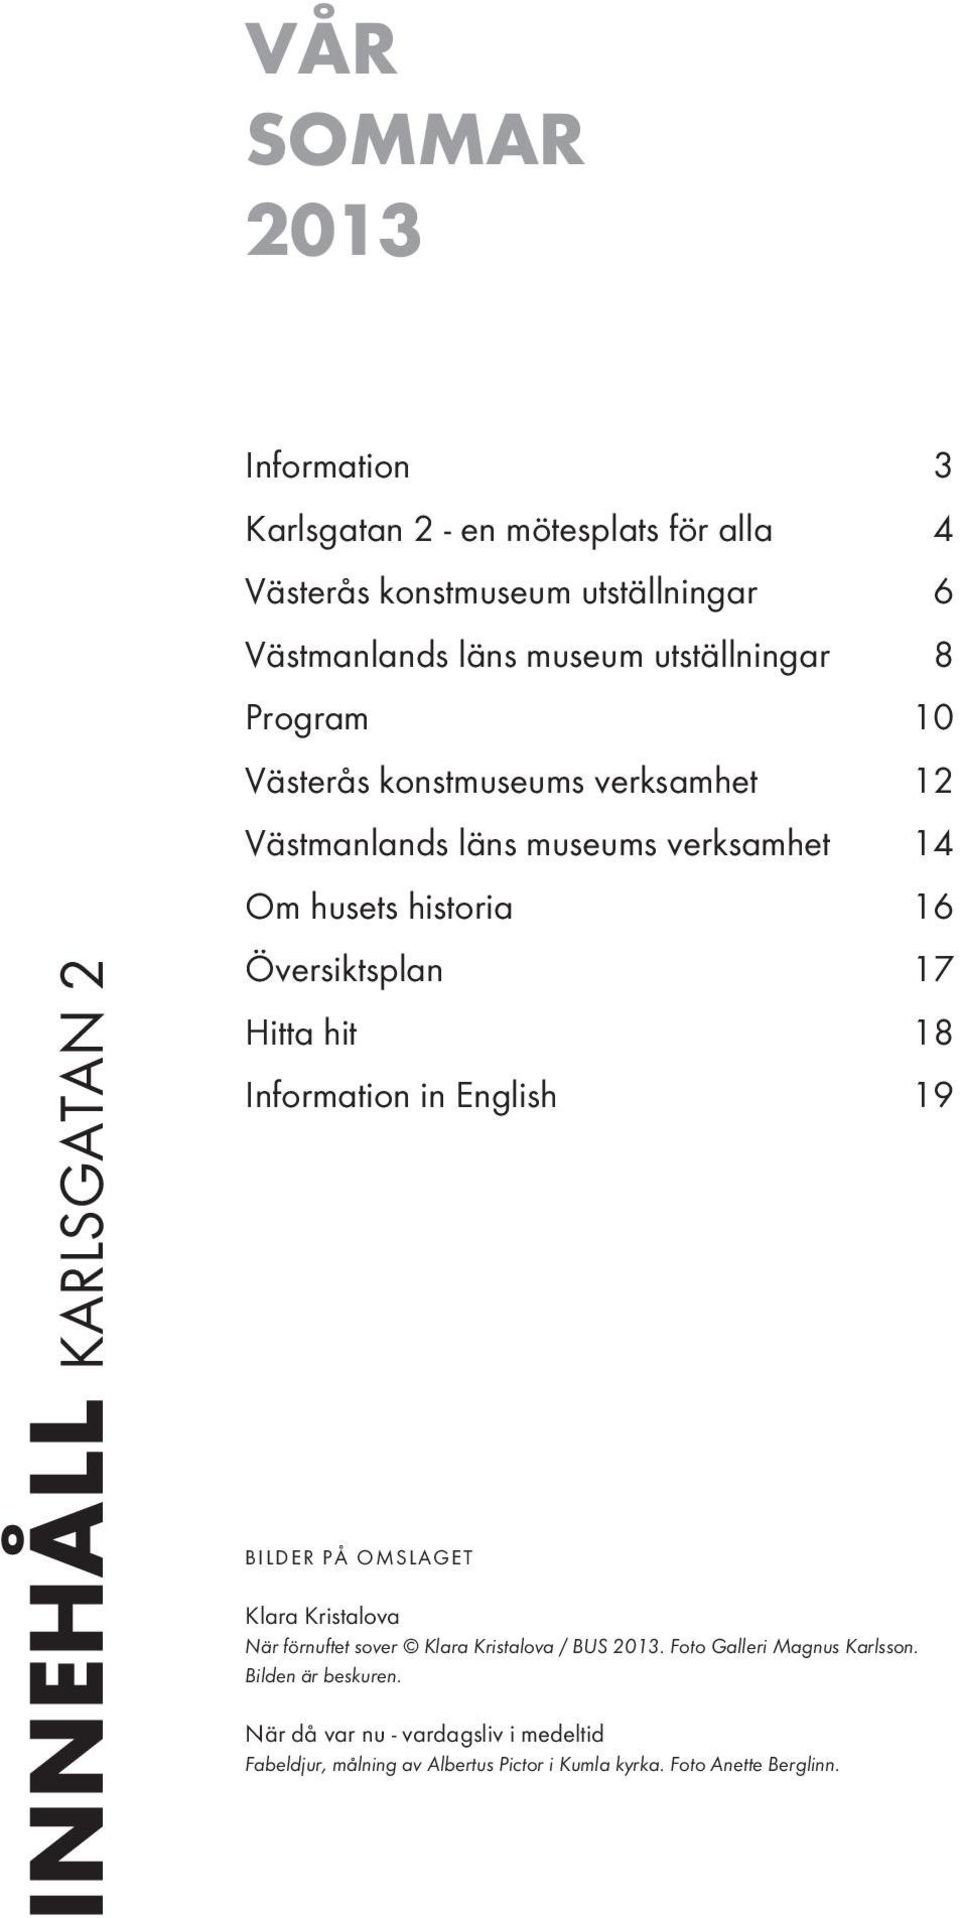 Översiktsplan 17 Hitta hit 18 Information in English 19 BILDER PÅ OMSLAGET Klara Kristalova När förnuftet sover Klara Kristalova / BUS 2013.